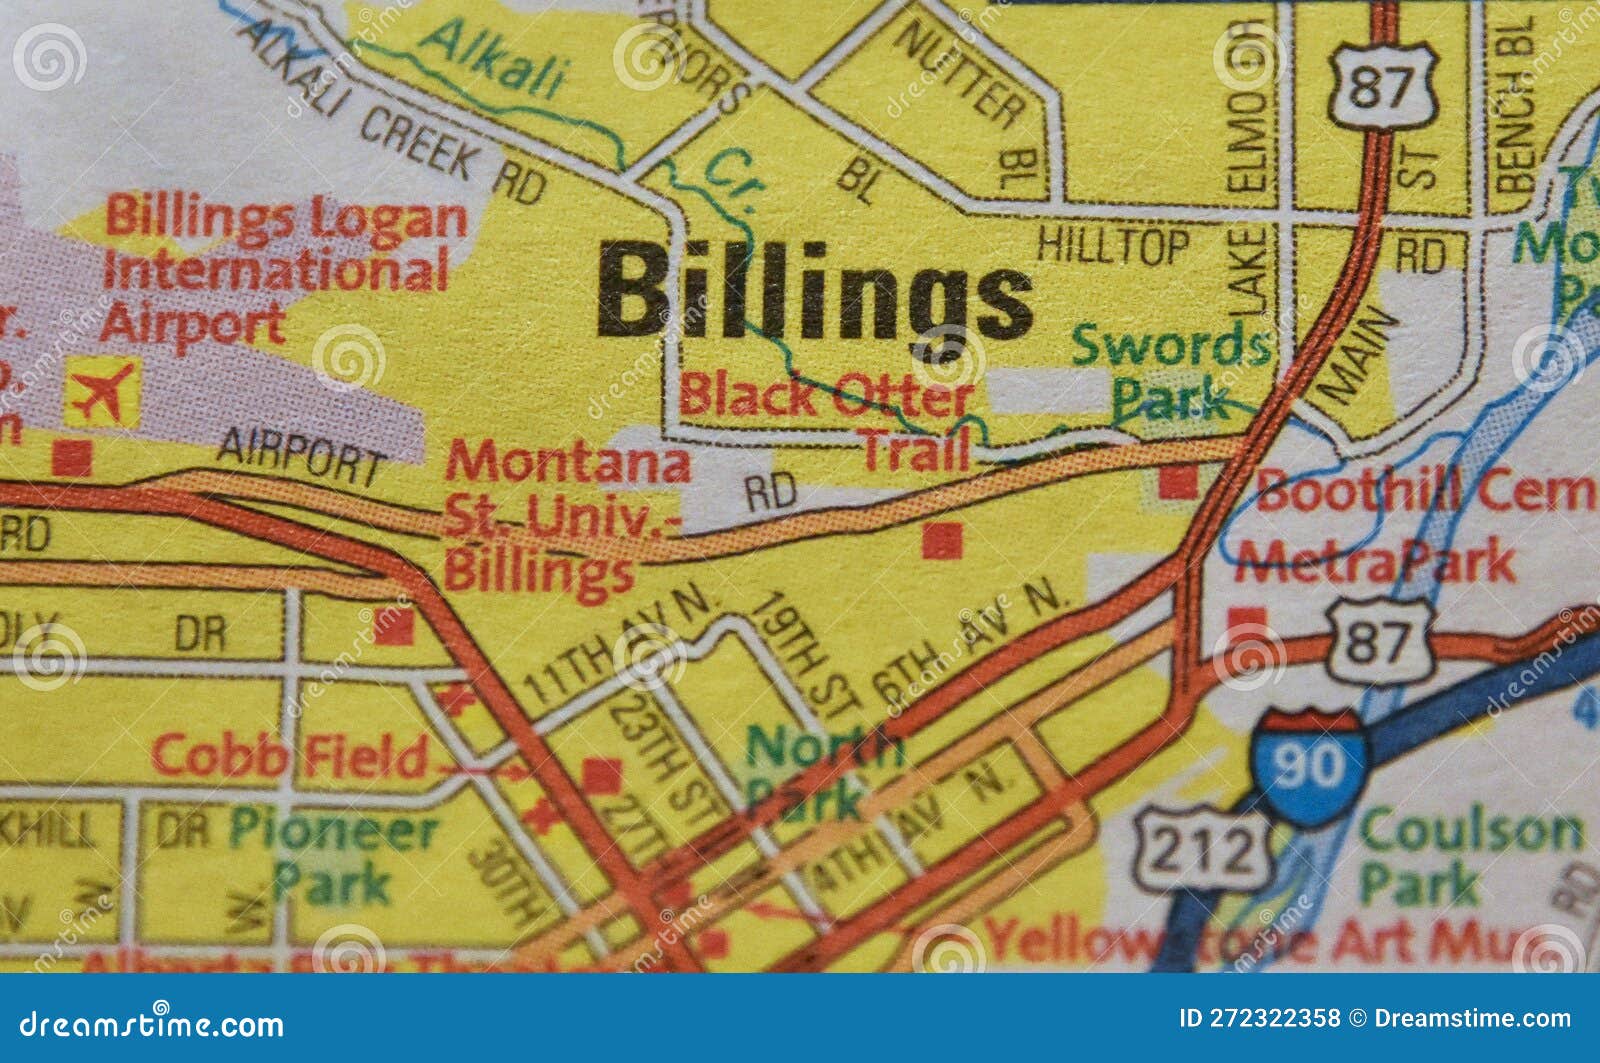 map image of billings montana 1